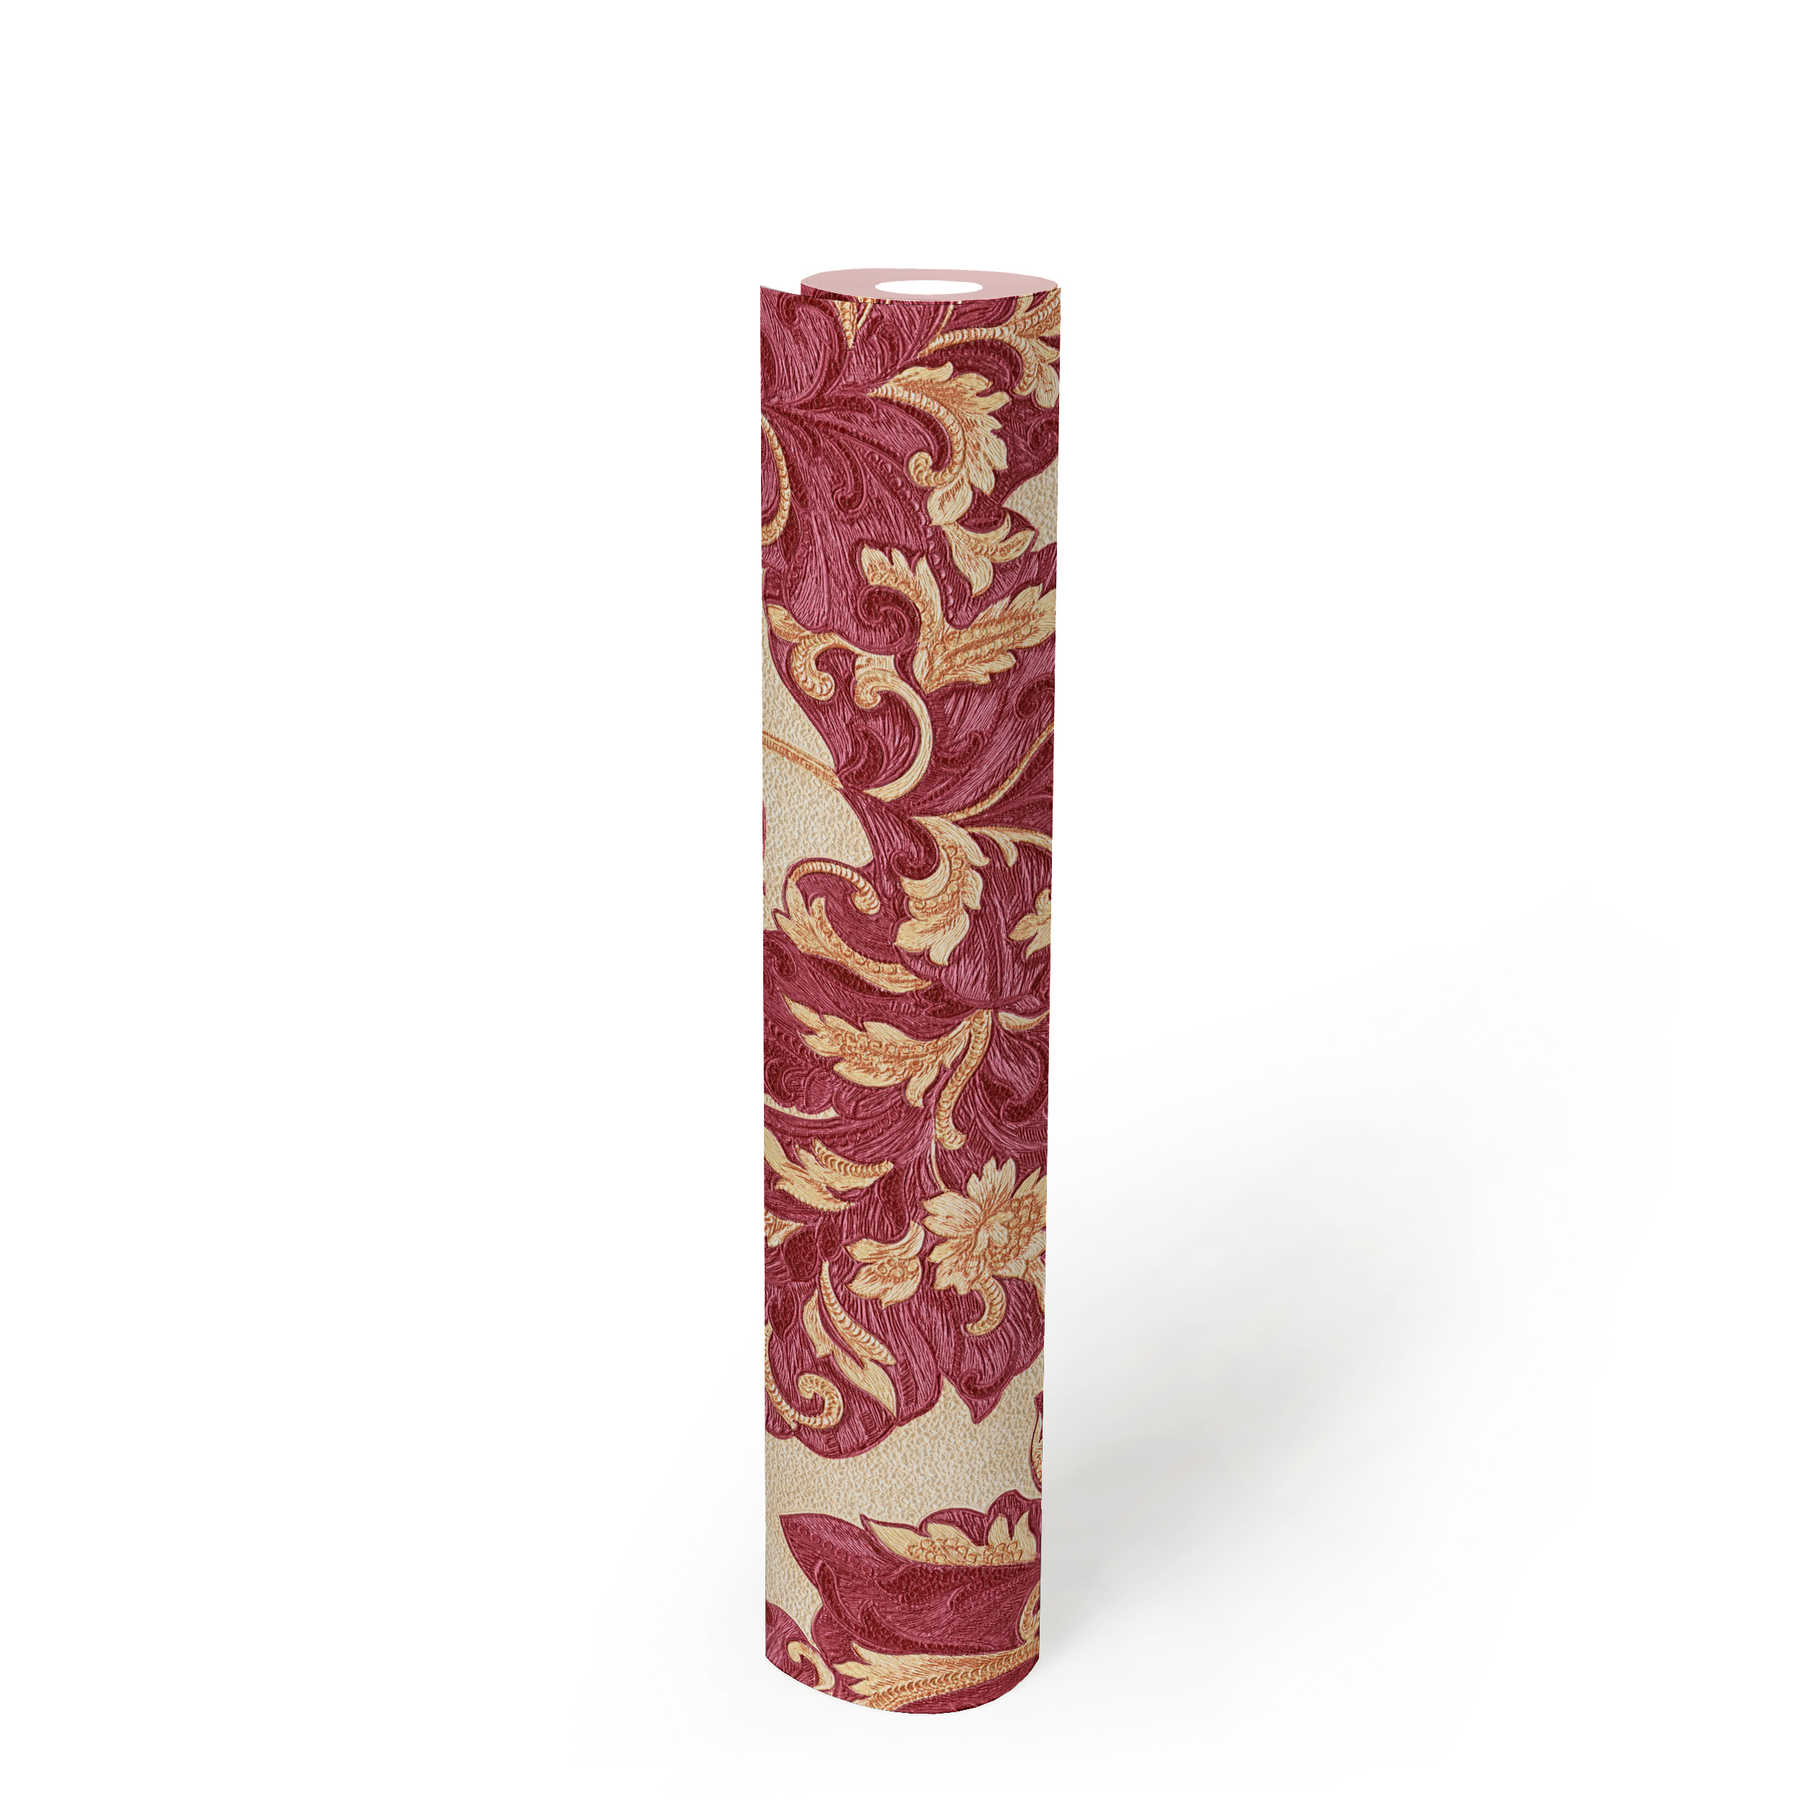             Metallic Tapete JOOP florale Blätter & Blüten – Metallic, Rot
        